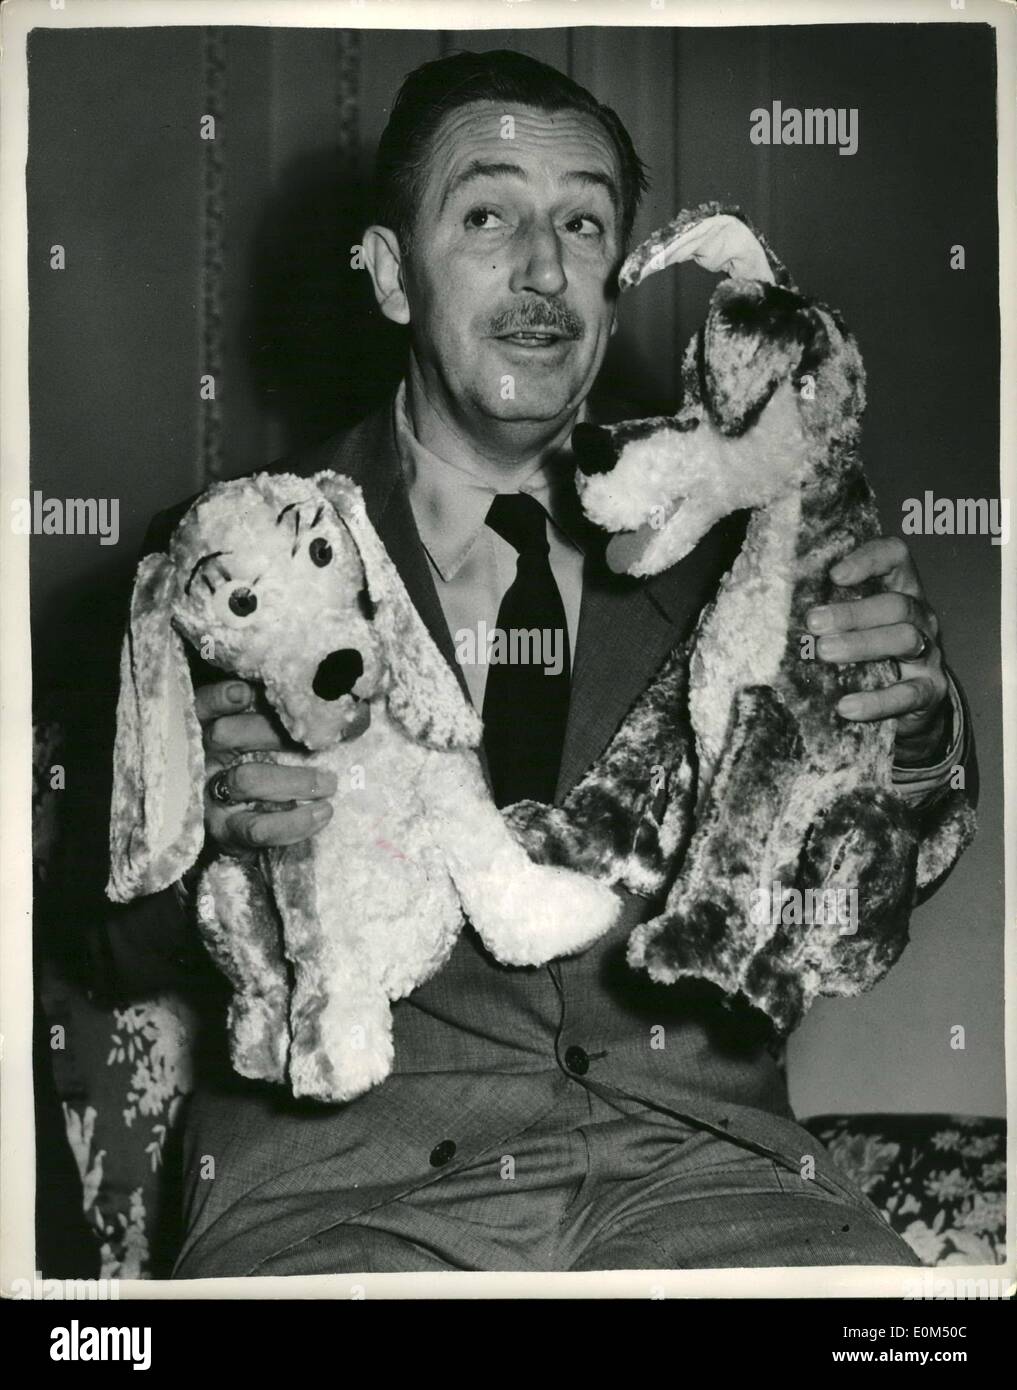 Juillet 07, 1953 - Walt Disney présente son tout dernier caractères ''The Lady'' et ''clochard''. Un couple de chiens. : célèbre caricaturiste Hollywood Walt Disney était d'être vu à Londres aujourd'hui l'introduction de ses deux nouveaux personnages - deux chiens sont appelées ''La dame et un appelé ''clochard''. L'apparaître dans son nouveau film du même nom (le Lady and the Tramp) qui est toujours en production. Walt Disney a expliqué qu'une ''Lady'' est un chien pedigree de Coker Spaniel carity - et ''clochard'' est une race mélangée - pleine de fun et de col Banque D'Images